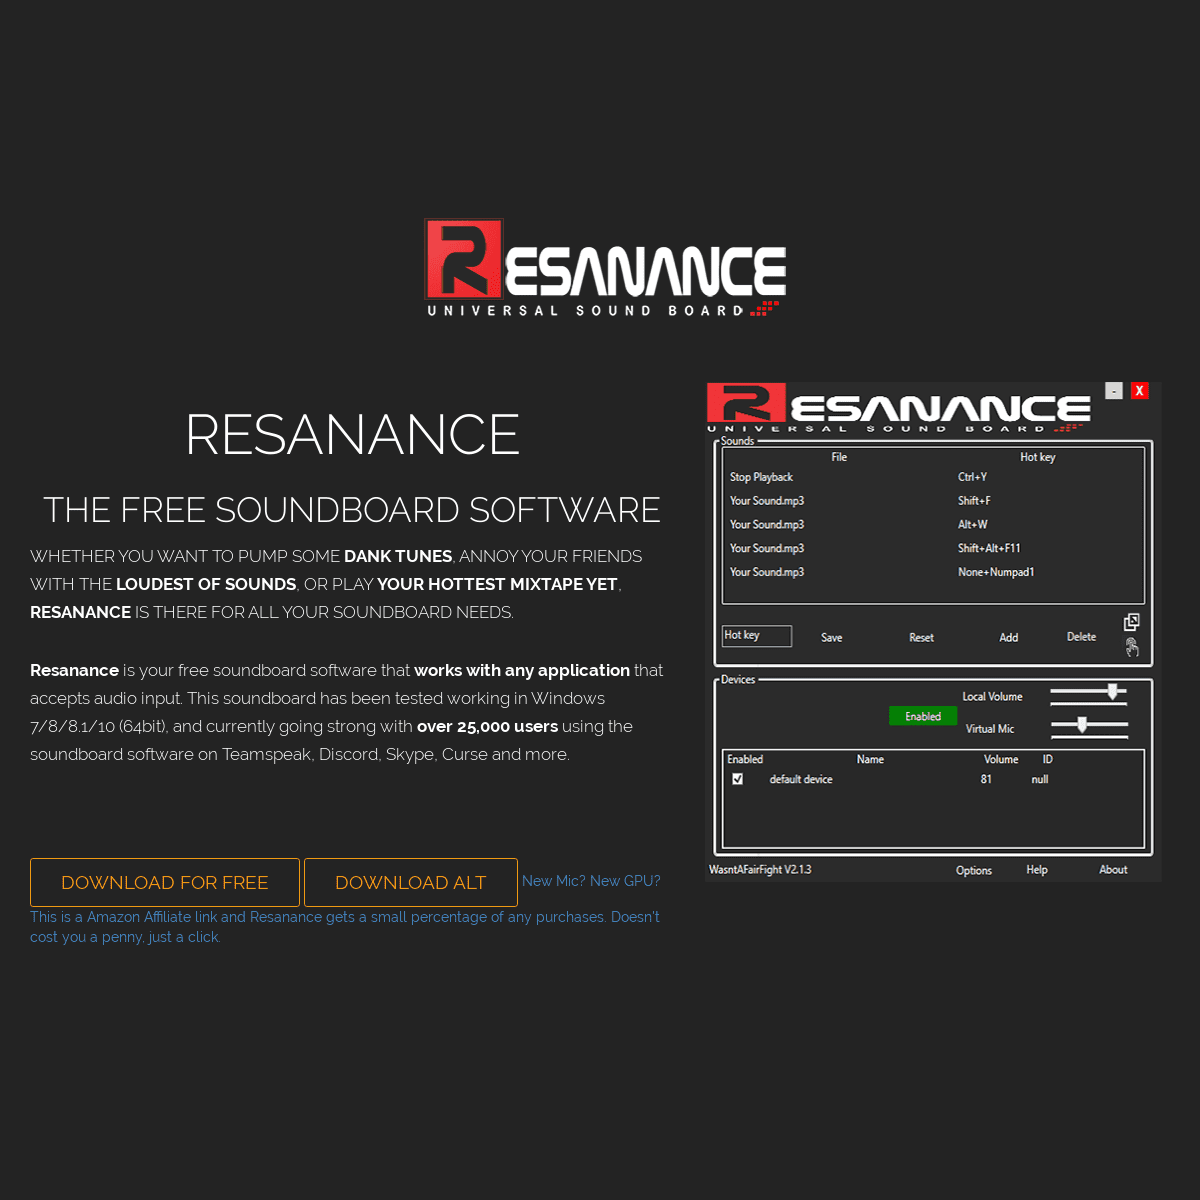 A complete backup of resanance.com